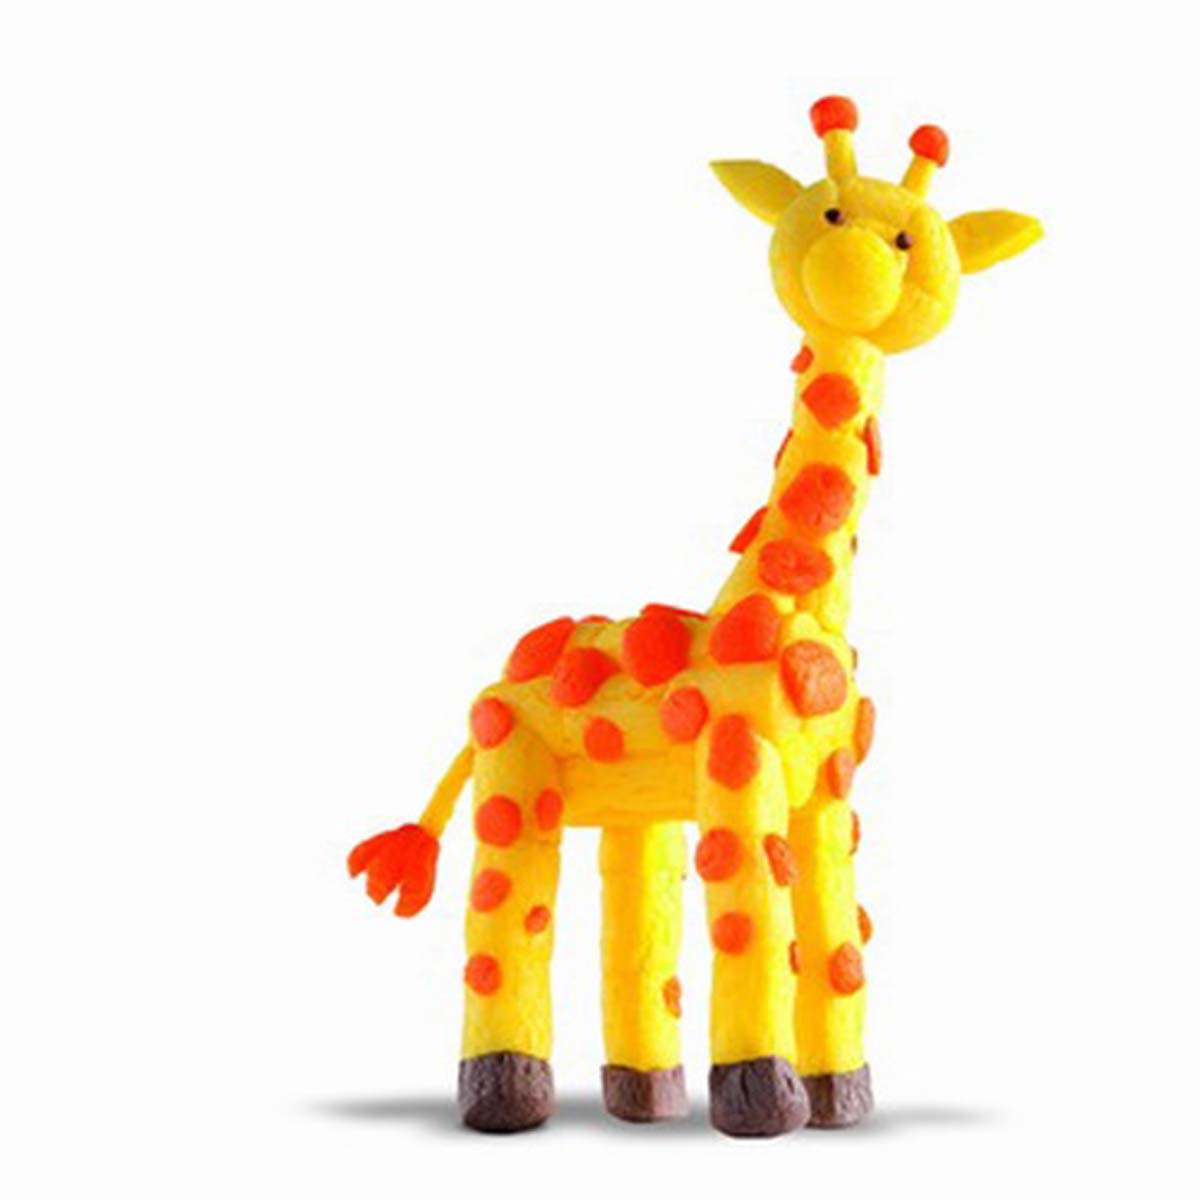 Lekker knutselen met de ONE giraffe set van PlayMais. Inhoud: >70 bouwstenen, een spons en een handige gebruiksaanwijzing. Natuurlijk, veilig en 100% biologisch afbreekbaar. VanZus